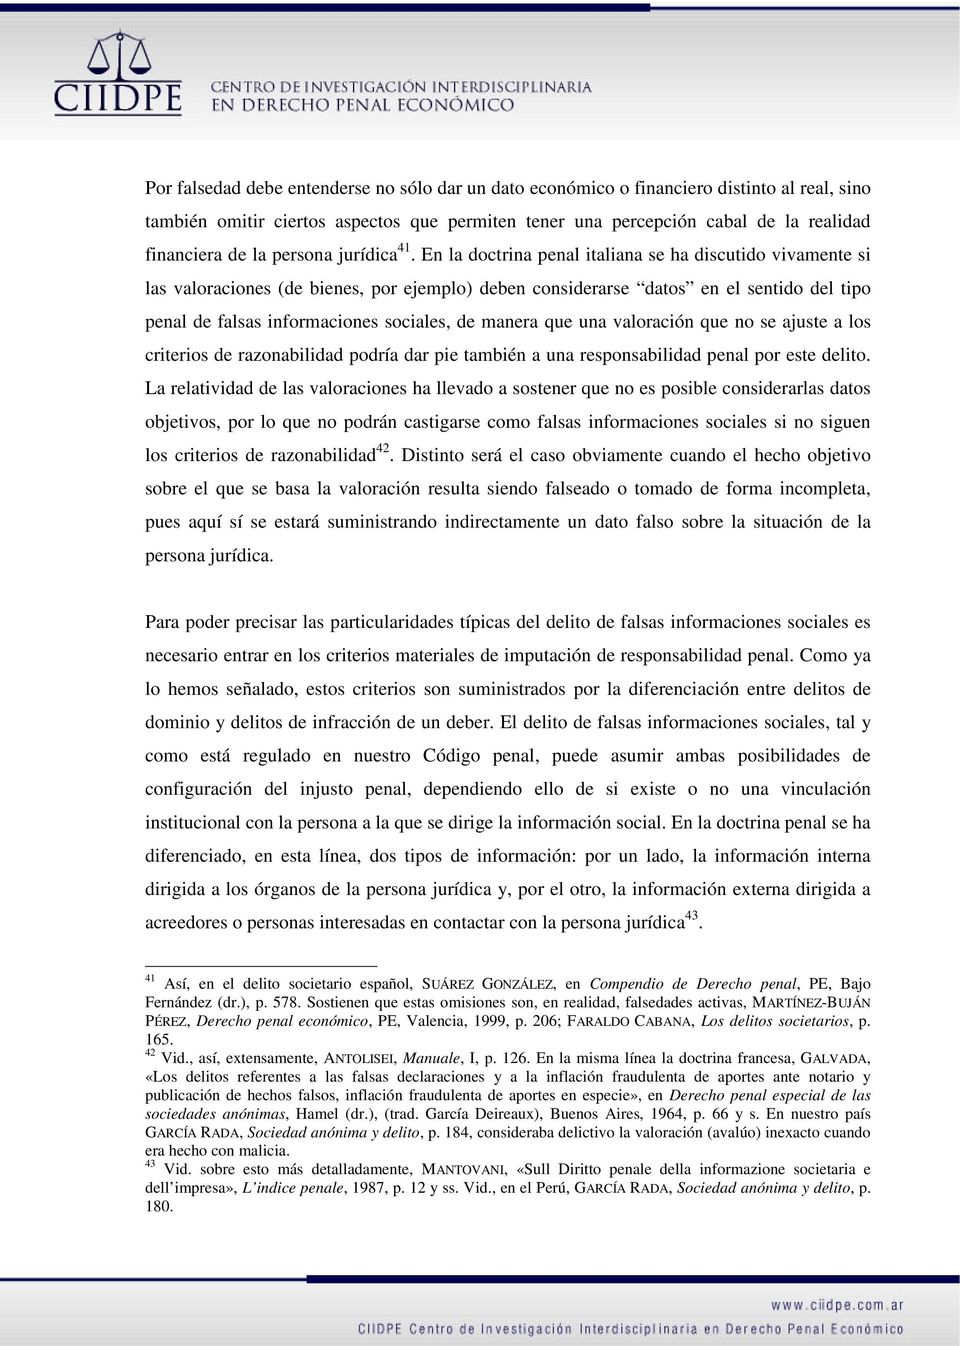 En la doctrina penal italiana se ha discutido vivamente si las valoraciones (de bienes, por ejemplo) deben considerarse datos en el sentido del tipo penal de falsas informaciones sociales, de manera